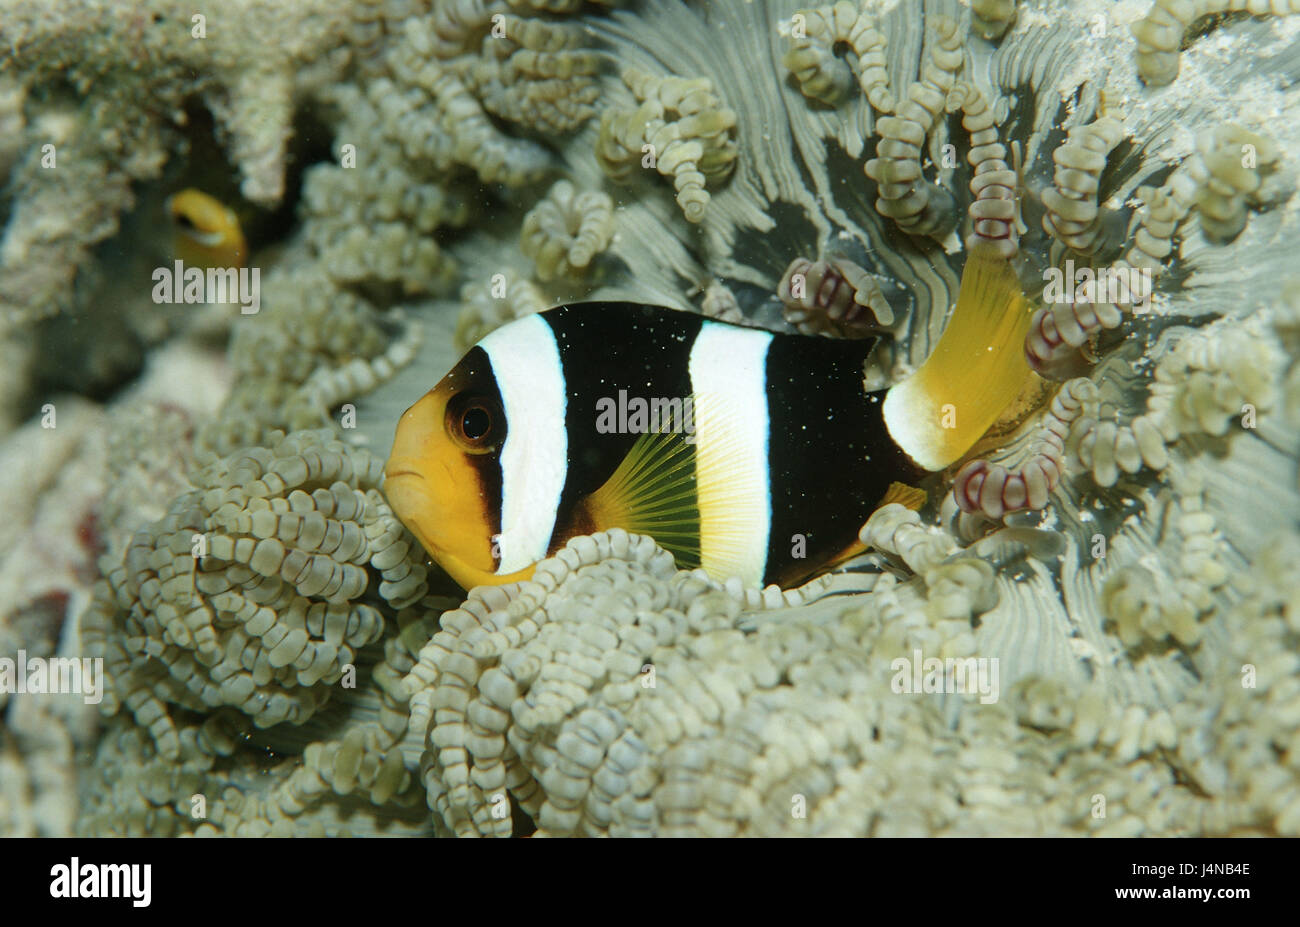 Clarks, poisson de l'anémone Amphiprion clarkii, coralliens Banque D'Images